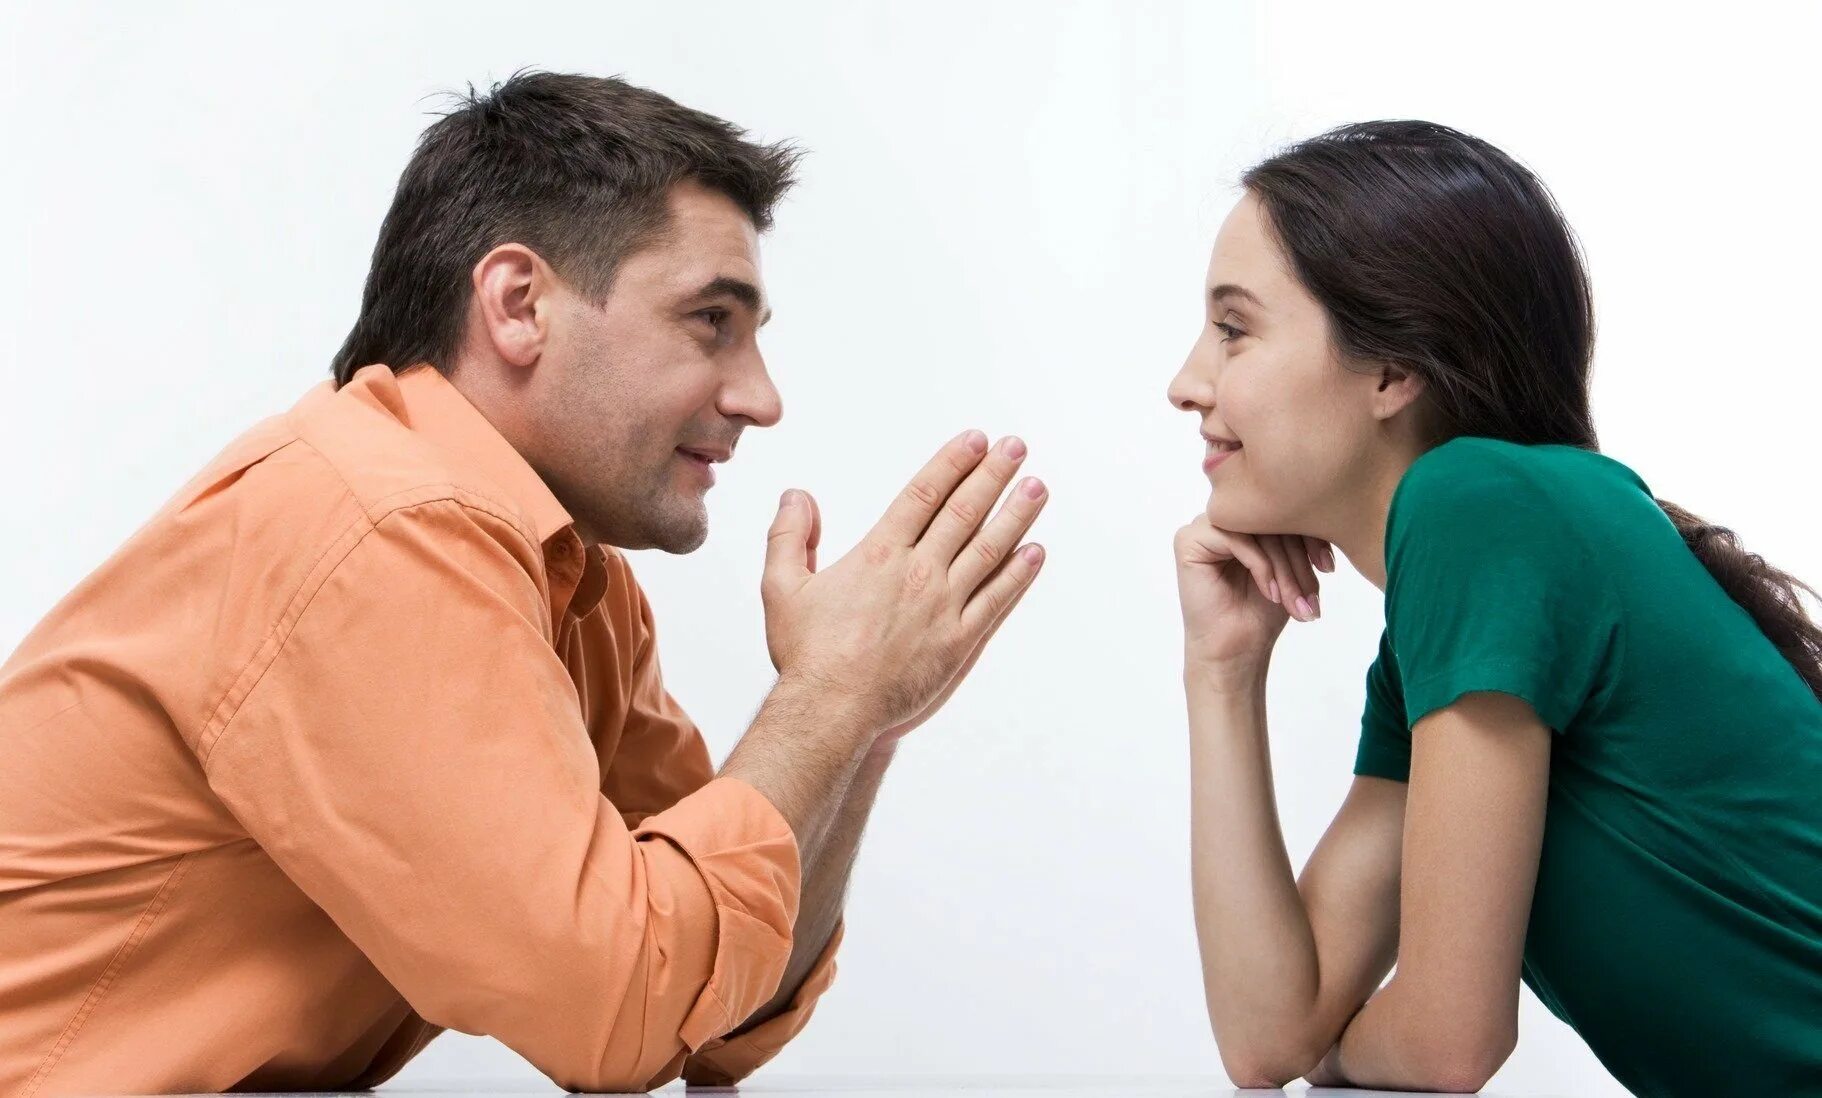 Разговор между мужчиной и женщиной. Общение людей. Взаимопонимание в общении. Беседа мужчины и женщины. Очень важно подстроиться под настроение